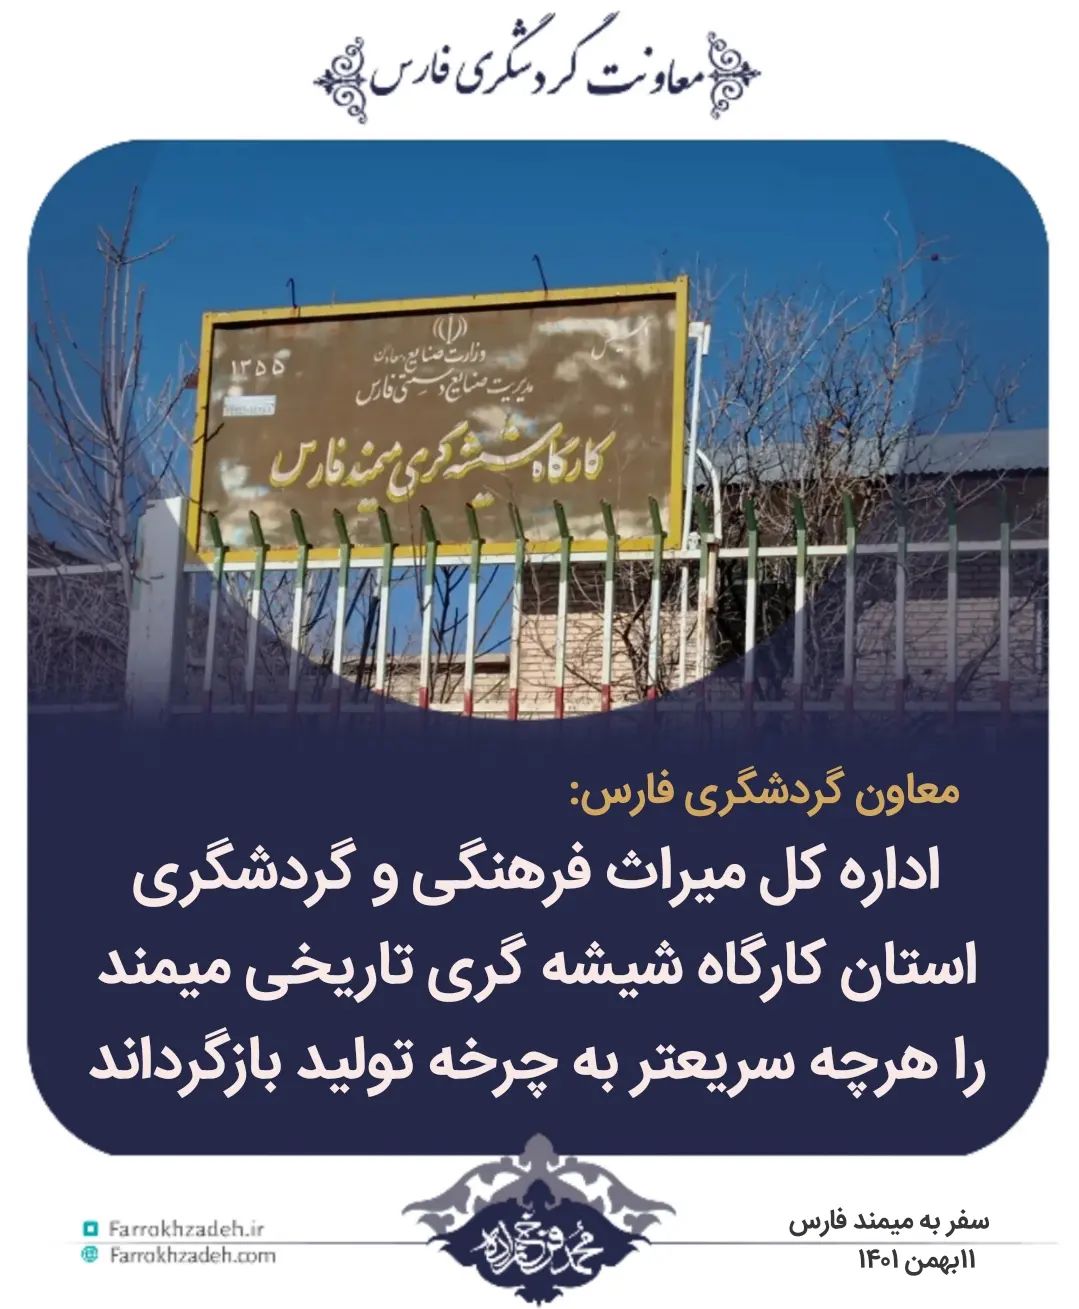 اداره کل میراث فرهنگی و گردشگری استان کارگاه شیشه گری تاریخی میمند را هر چه سریعتر به چرخه تولید بازگرداند